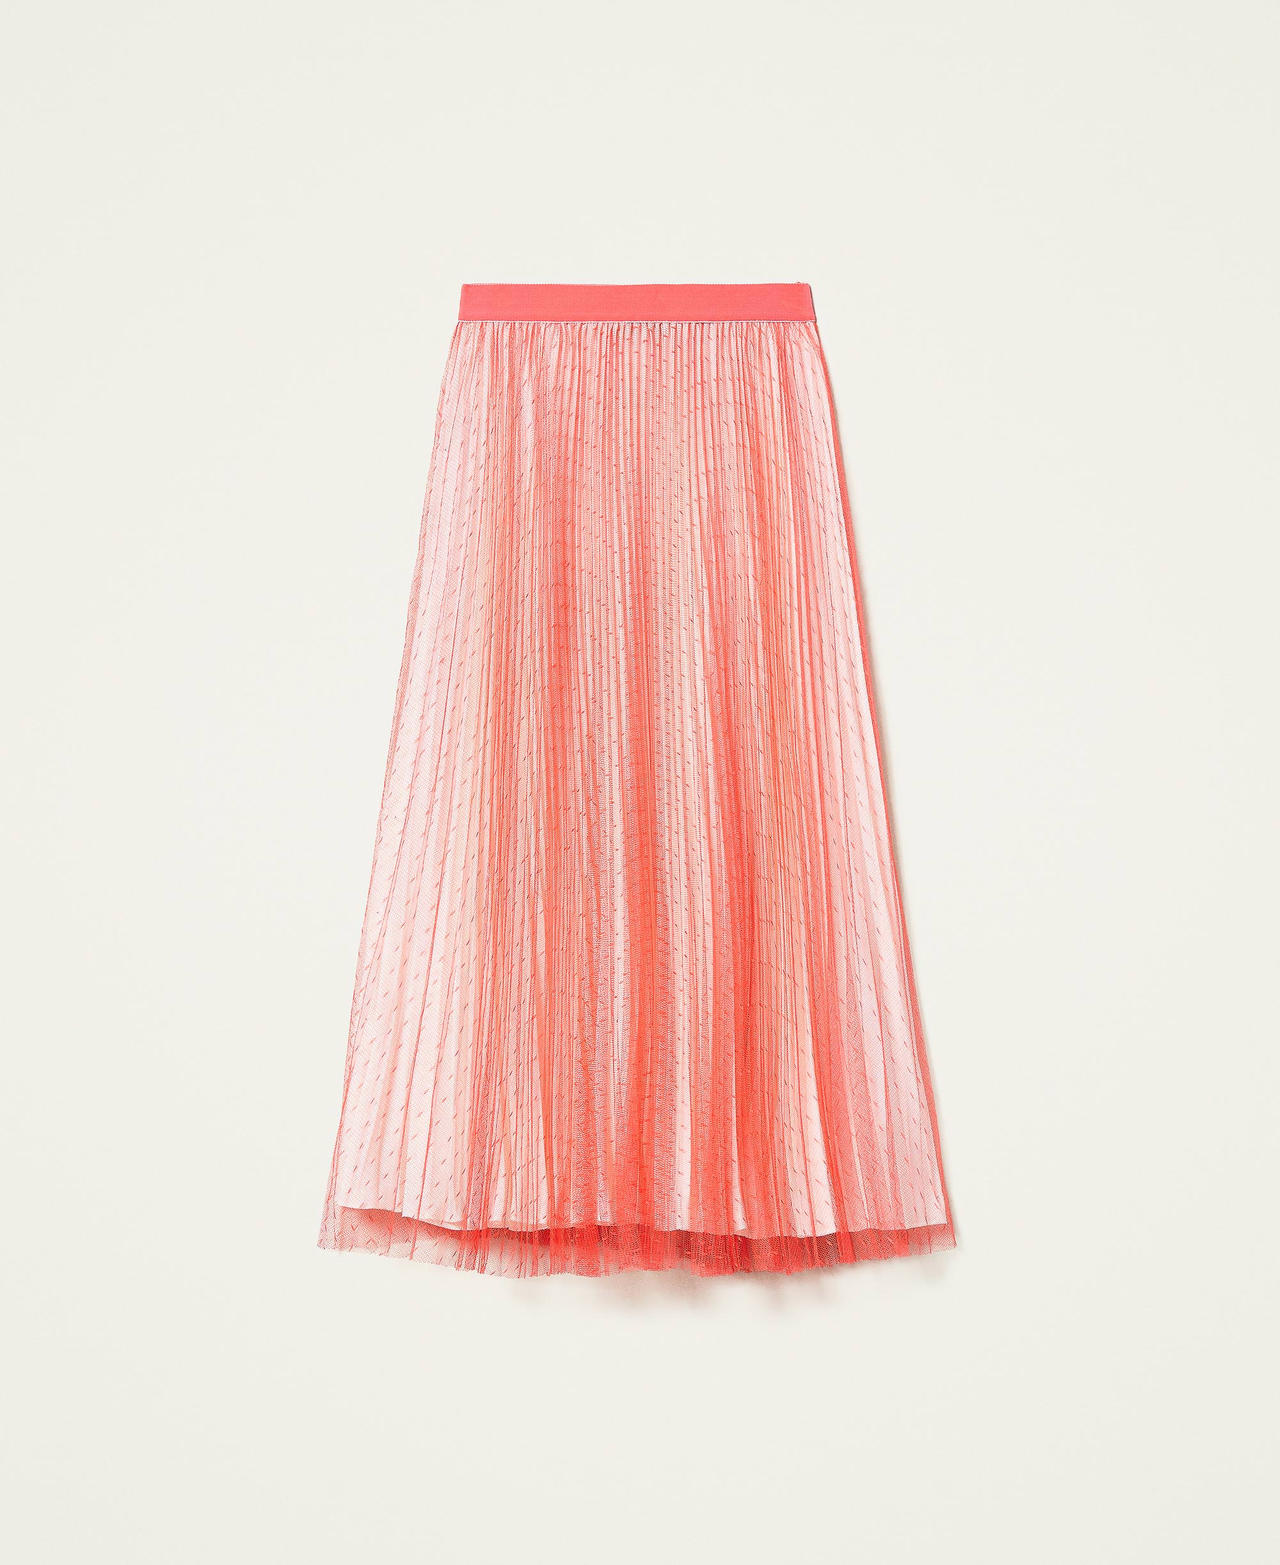 Jupe longue en tulle plumetis Bicolore Rouge « Coral Candy » / Blanc « Neige » Femme 212TT2060-0S